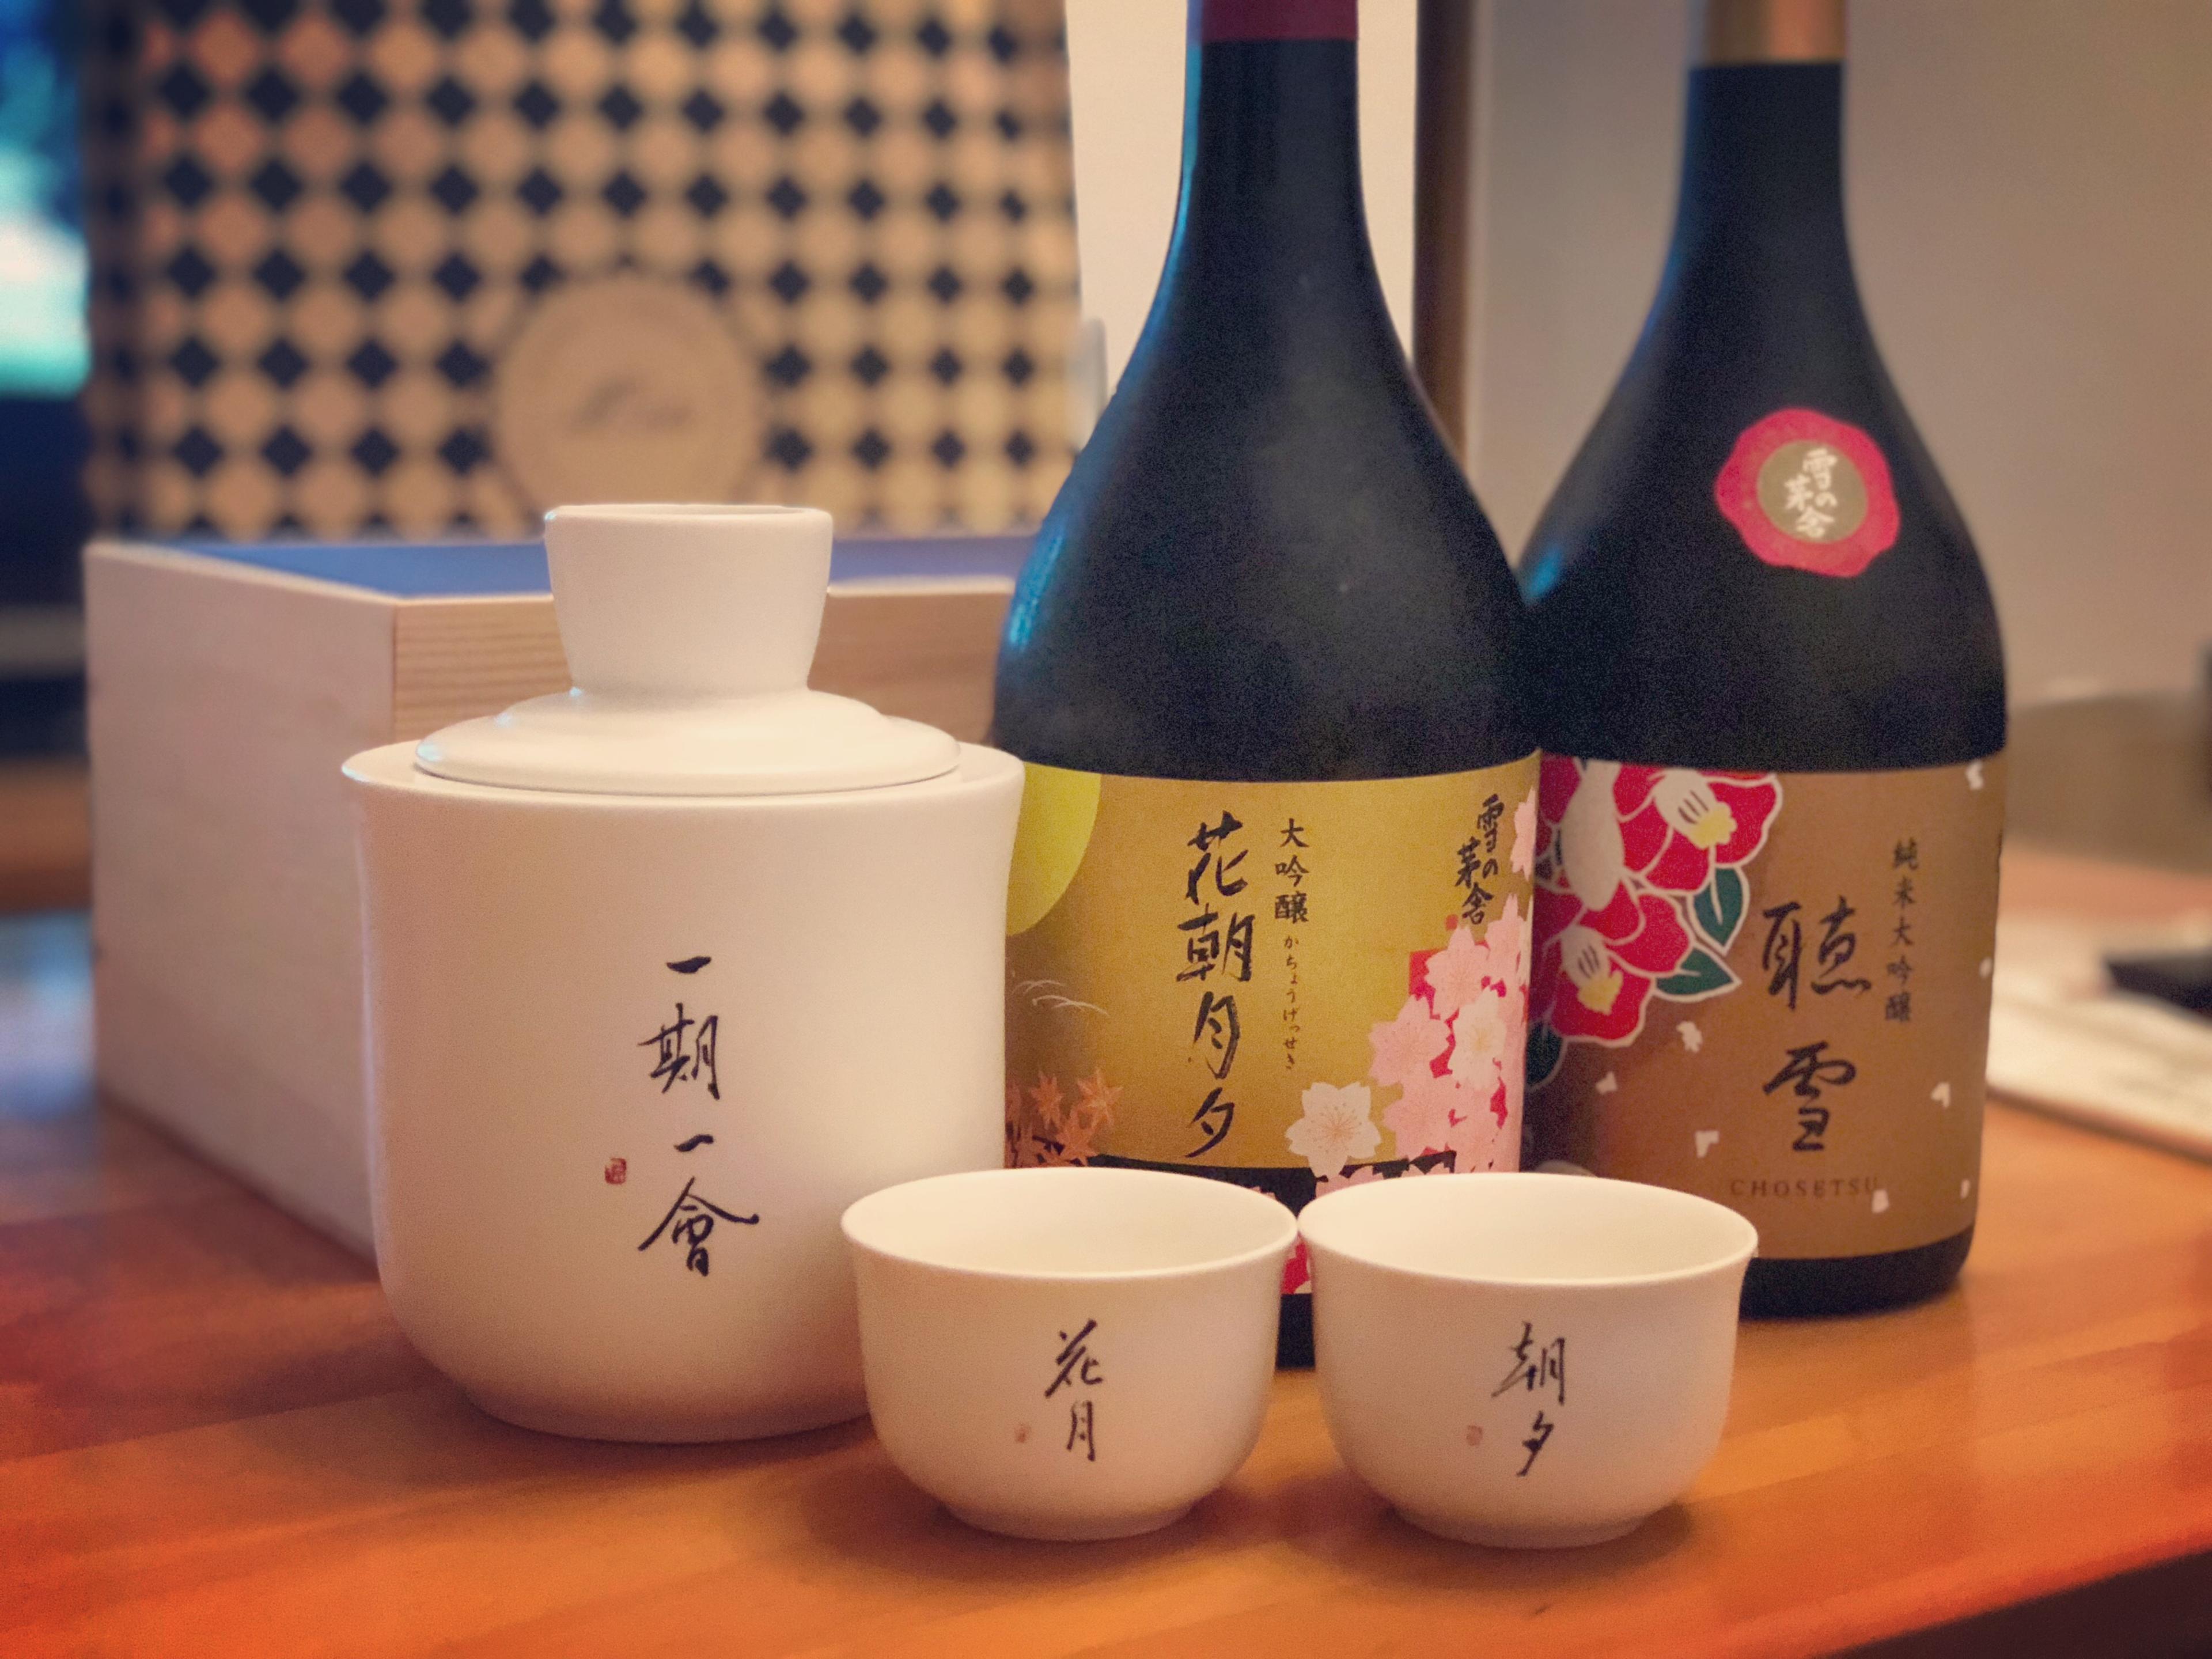 日本酒的季節美學每季都有限定酒 - WineNow HK 專欄文章